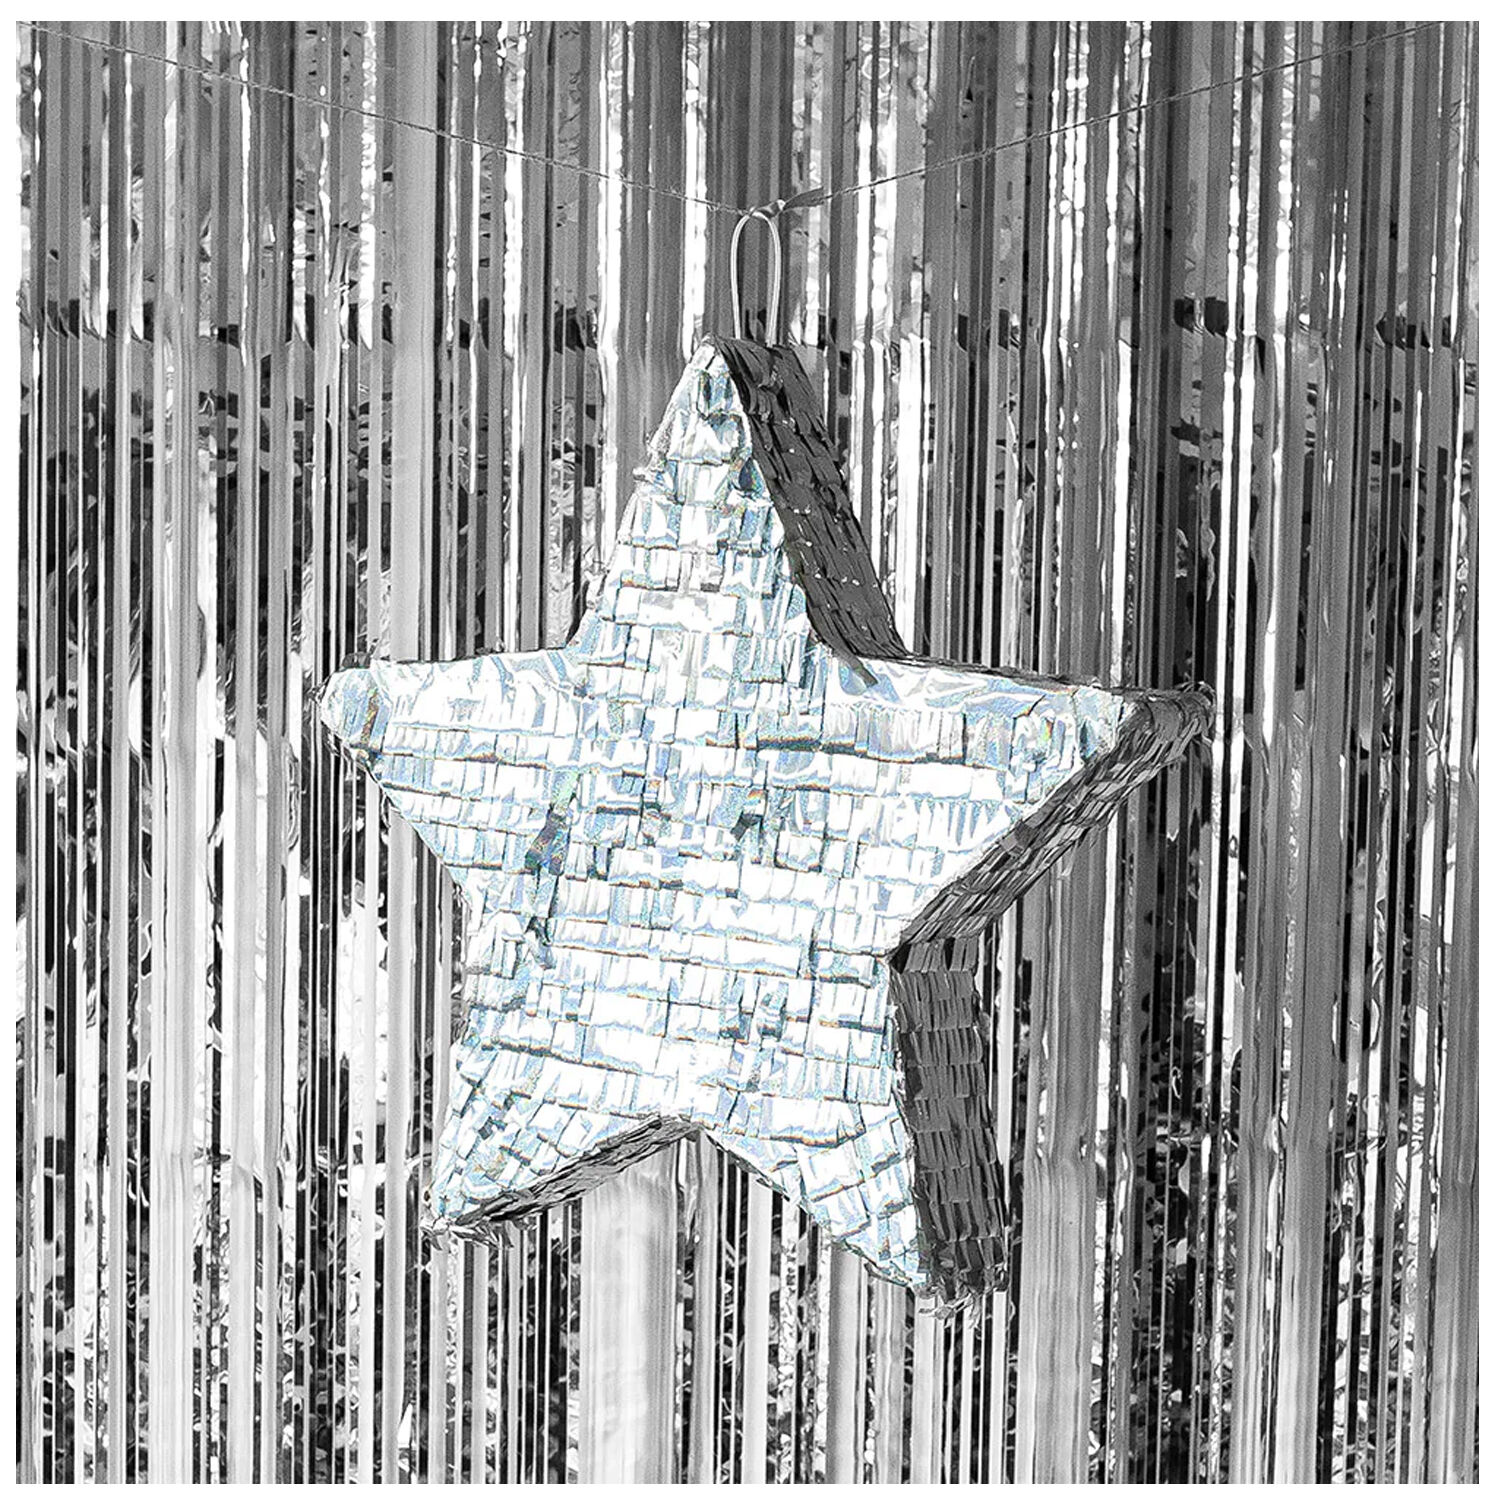 NEU Pinata Stern, mit Flitterfolie bedeckt, silber, 44x44cm Bild 2